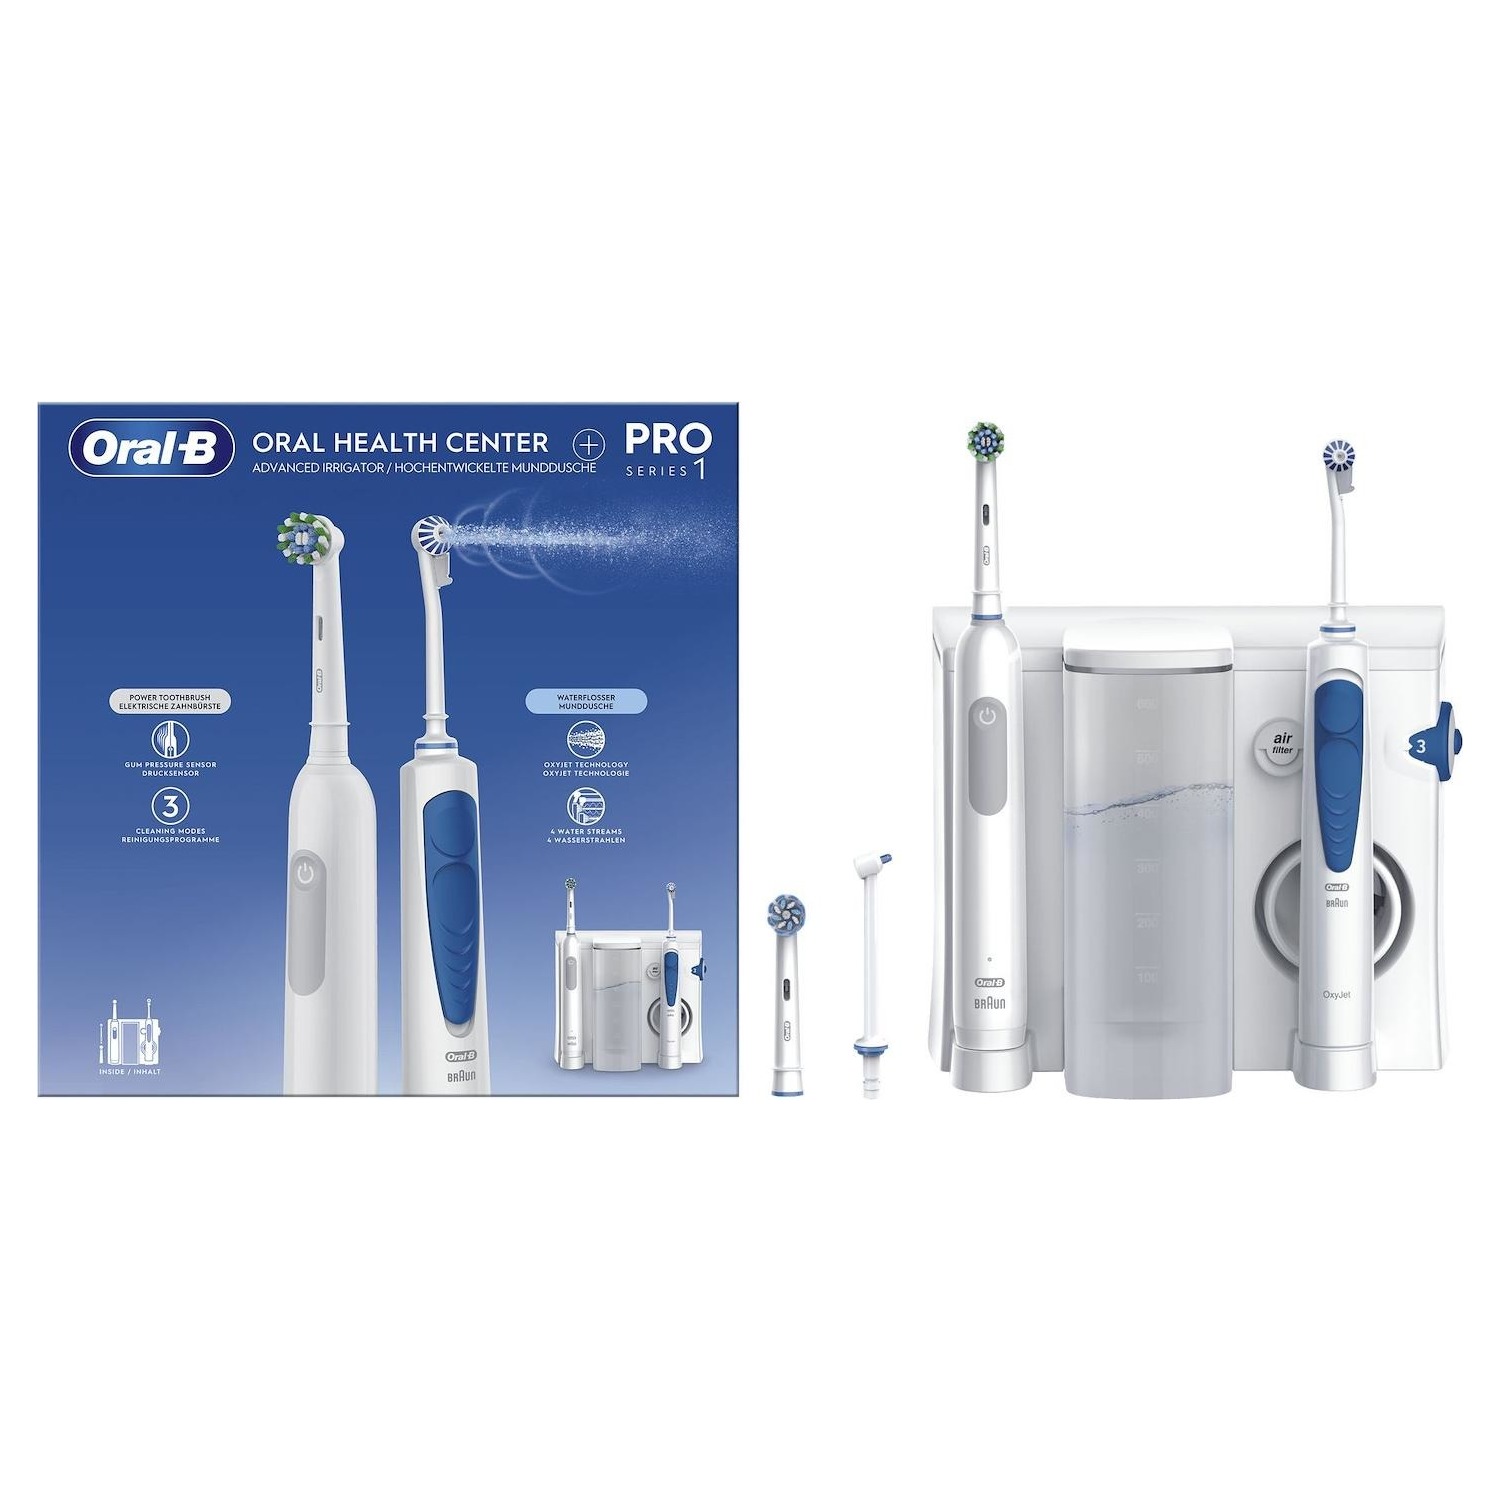 Immagine per Stazione orale Braun Oral-B idropulsore MD20 + spazzolino elettrico Braun Oral-B PRO1 da DIMOStore